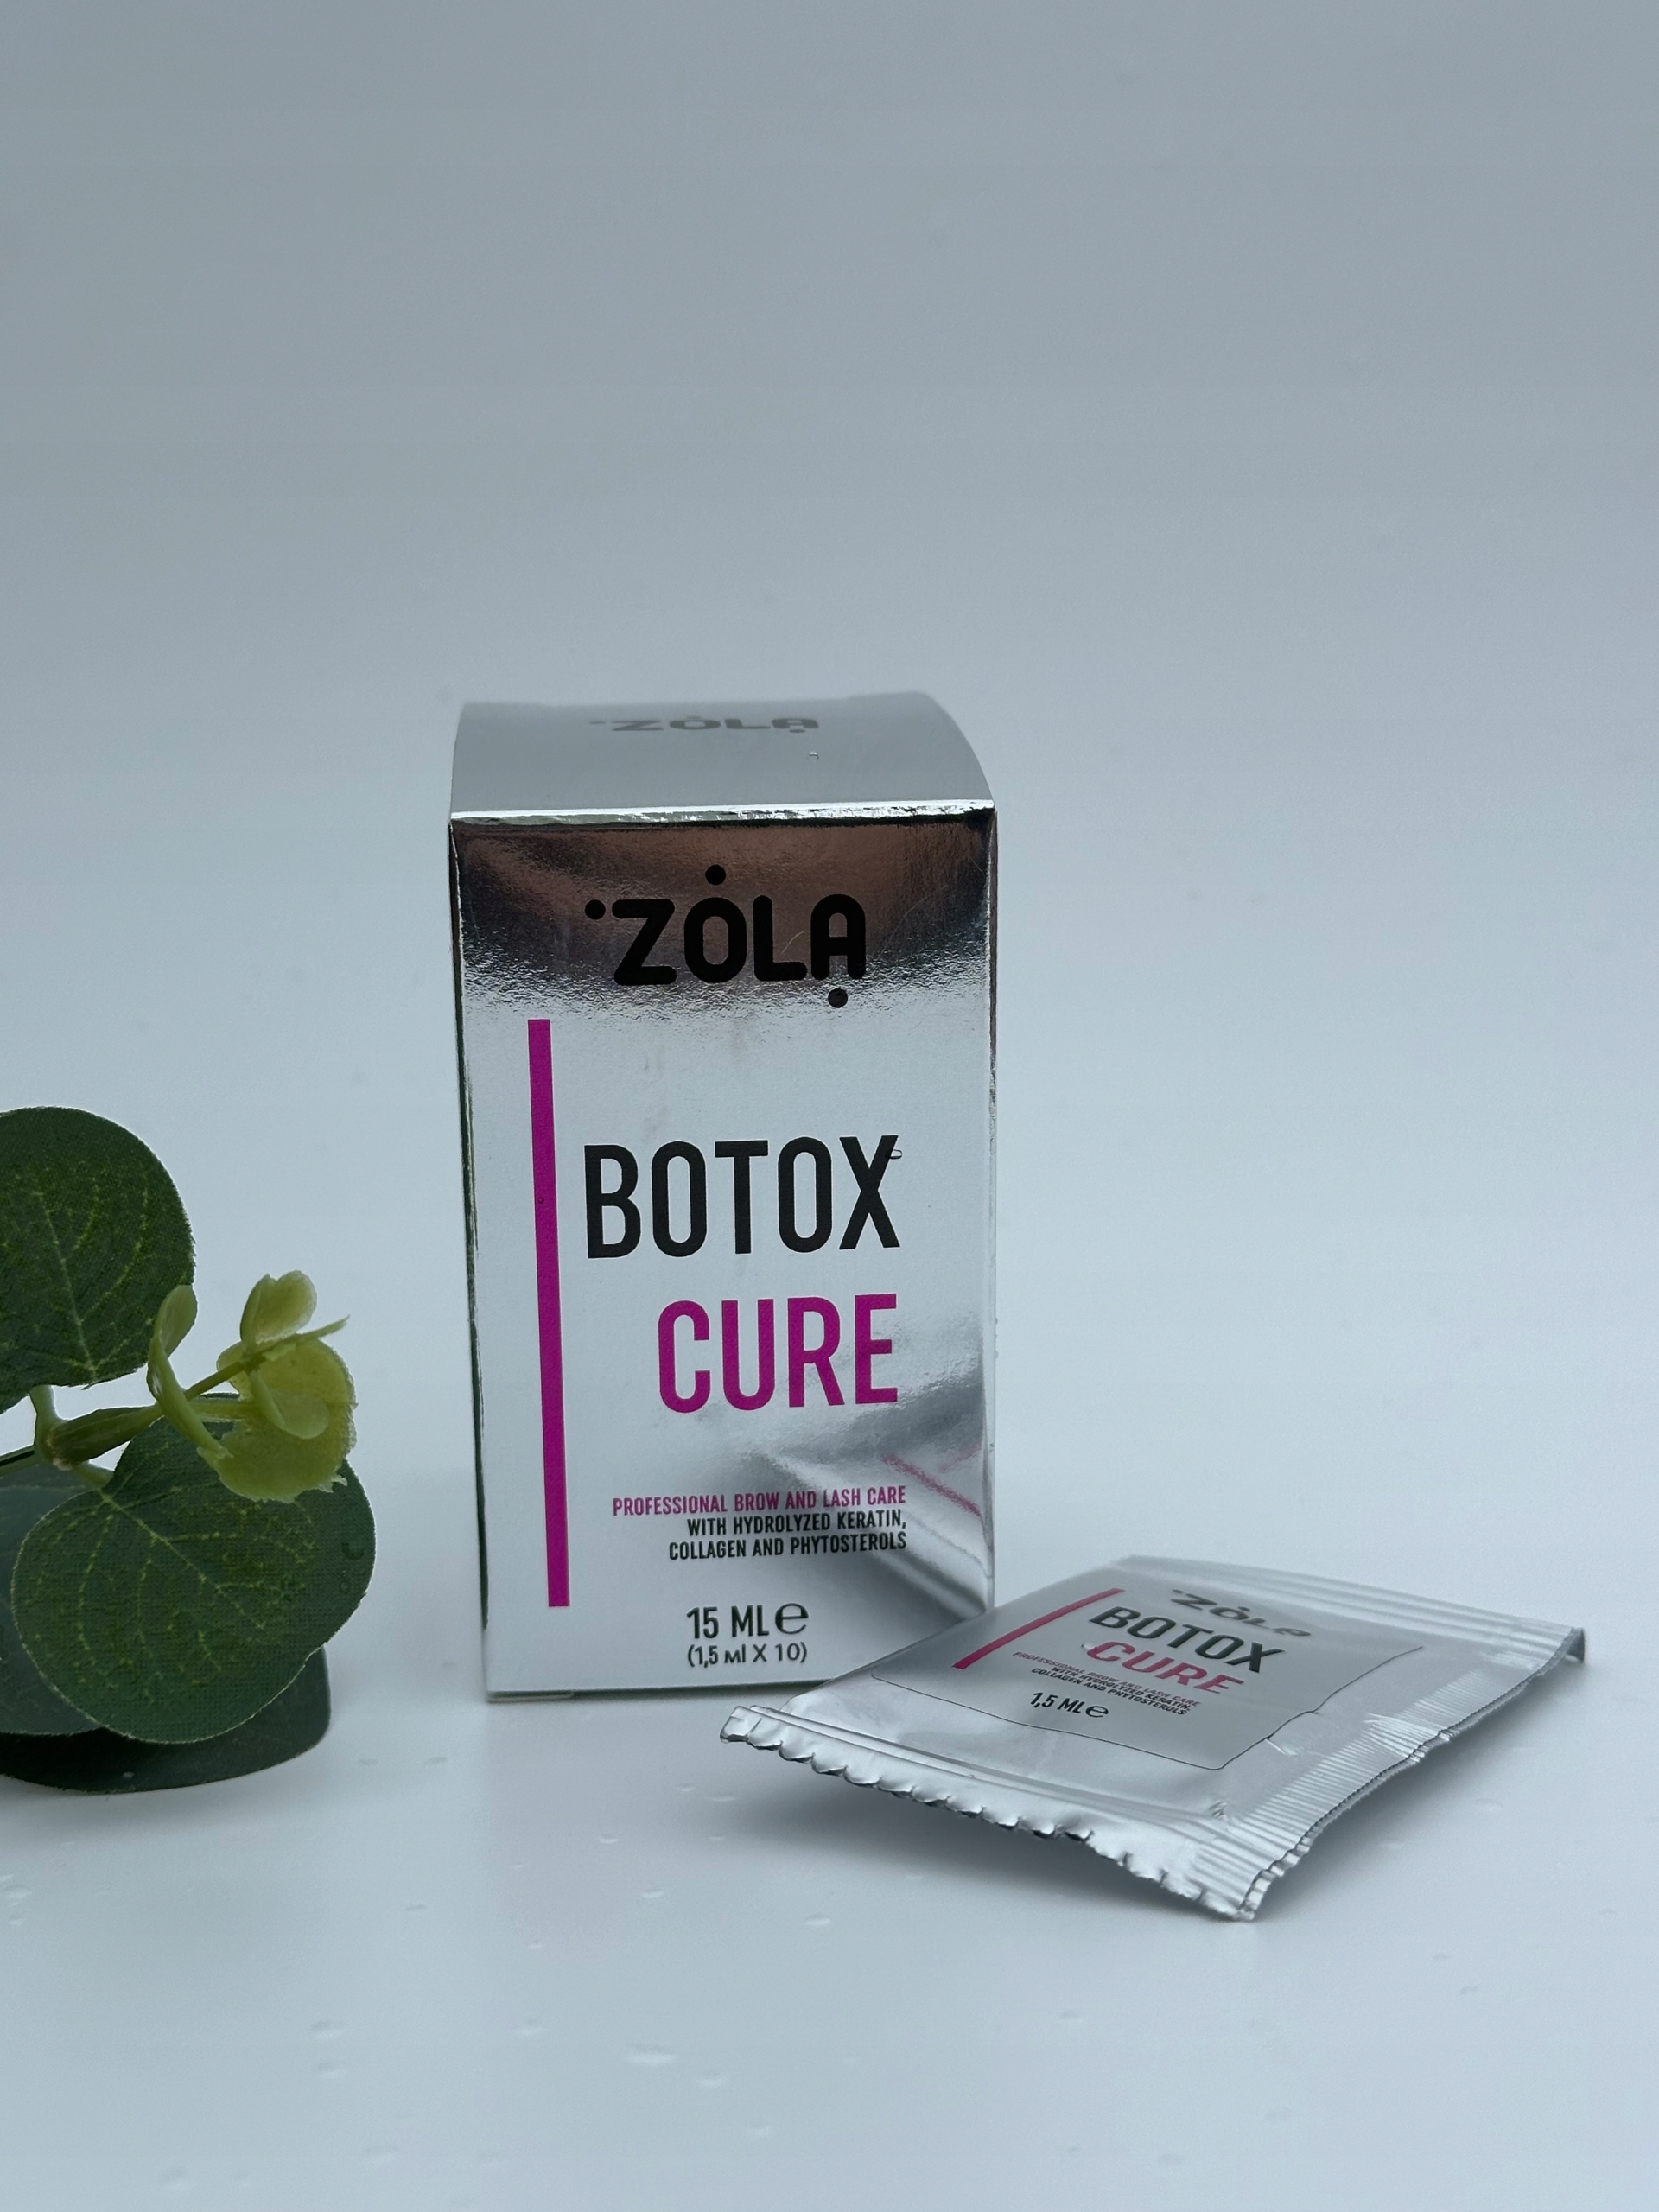 Zola Cure 10 x 1,5 ml odżywka do brwi i rzęs z keratyną kolagenem